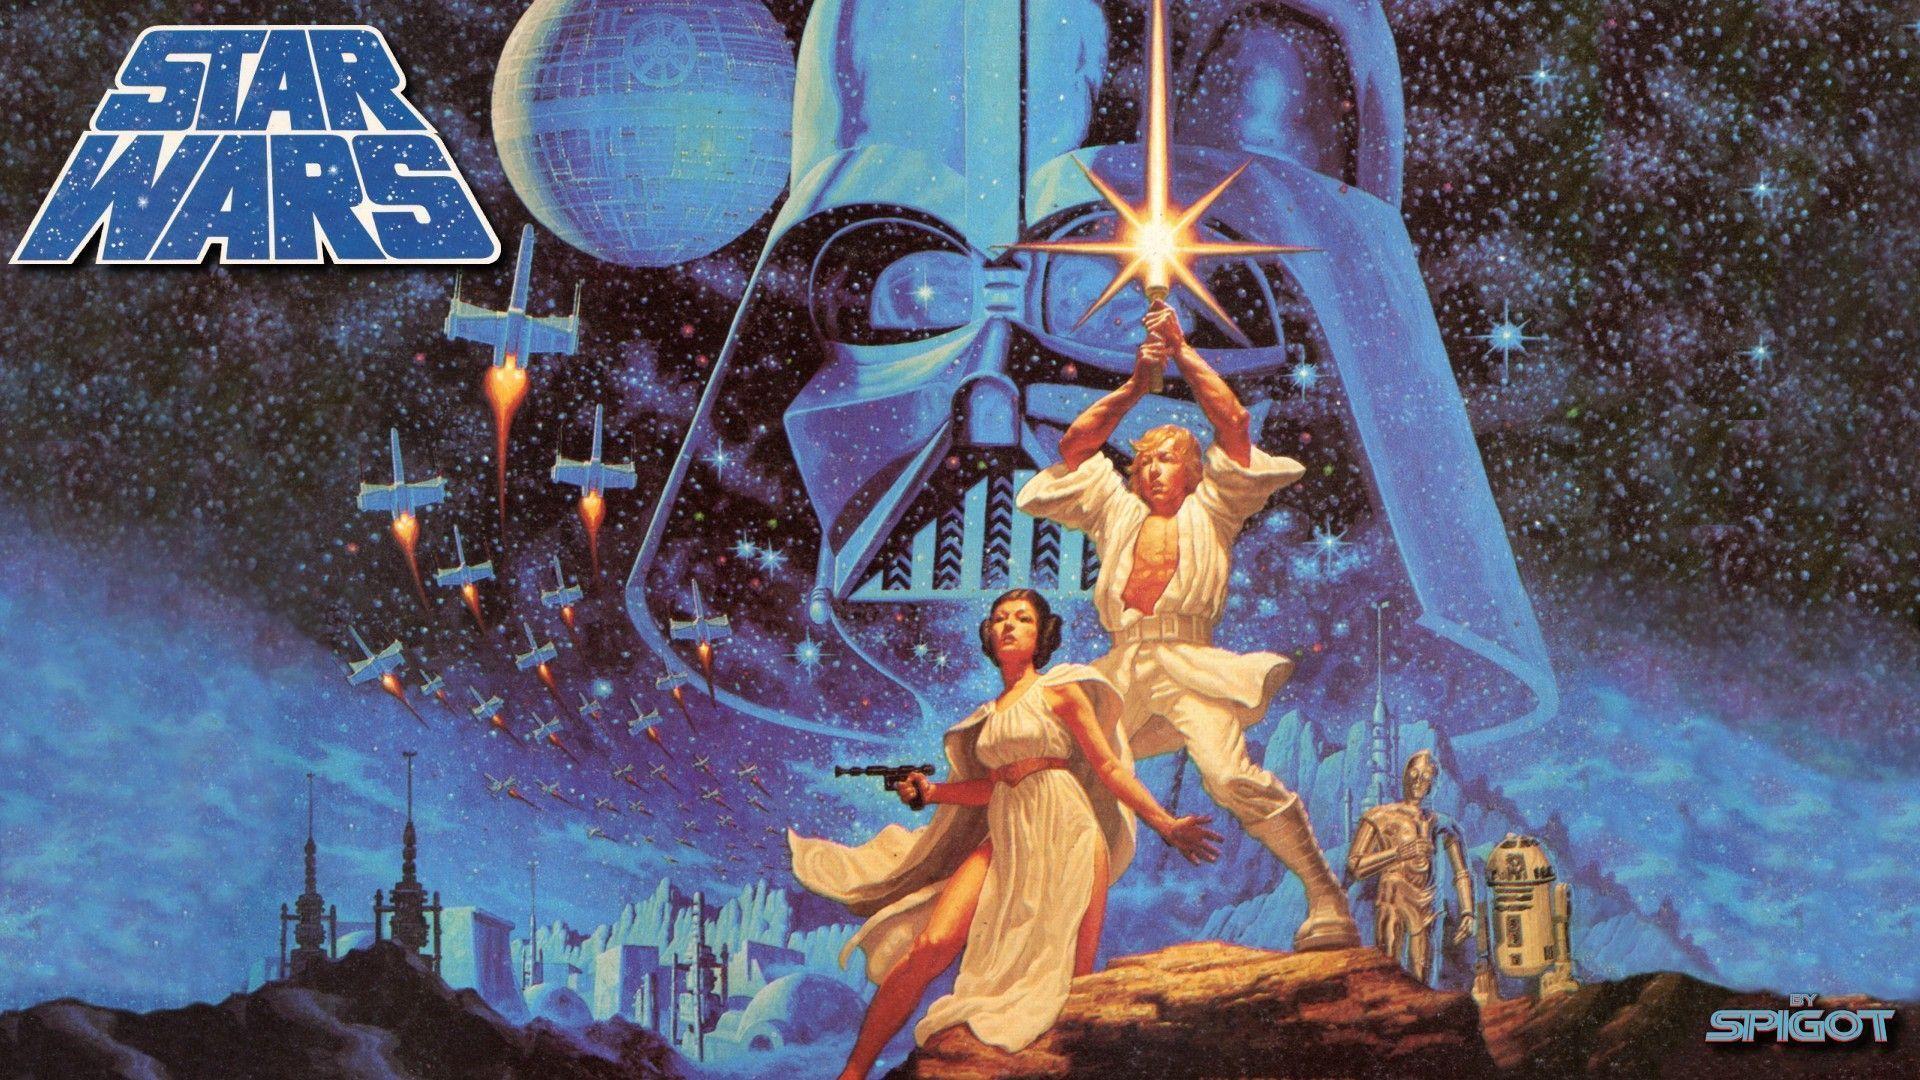 New Classic Star Wars Wallpaper. George Spigot&;s Blog